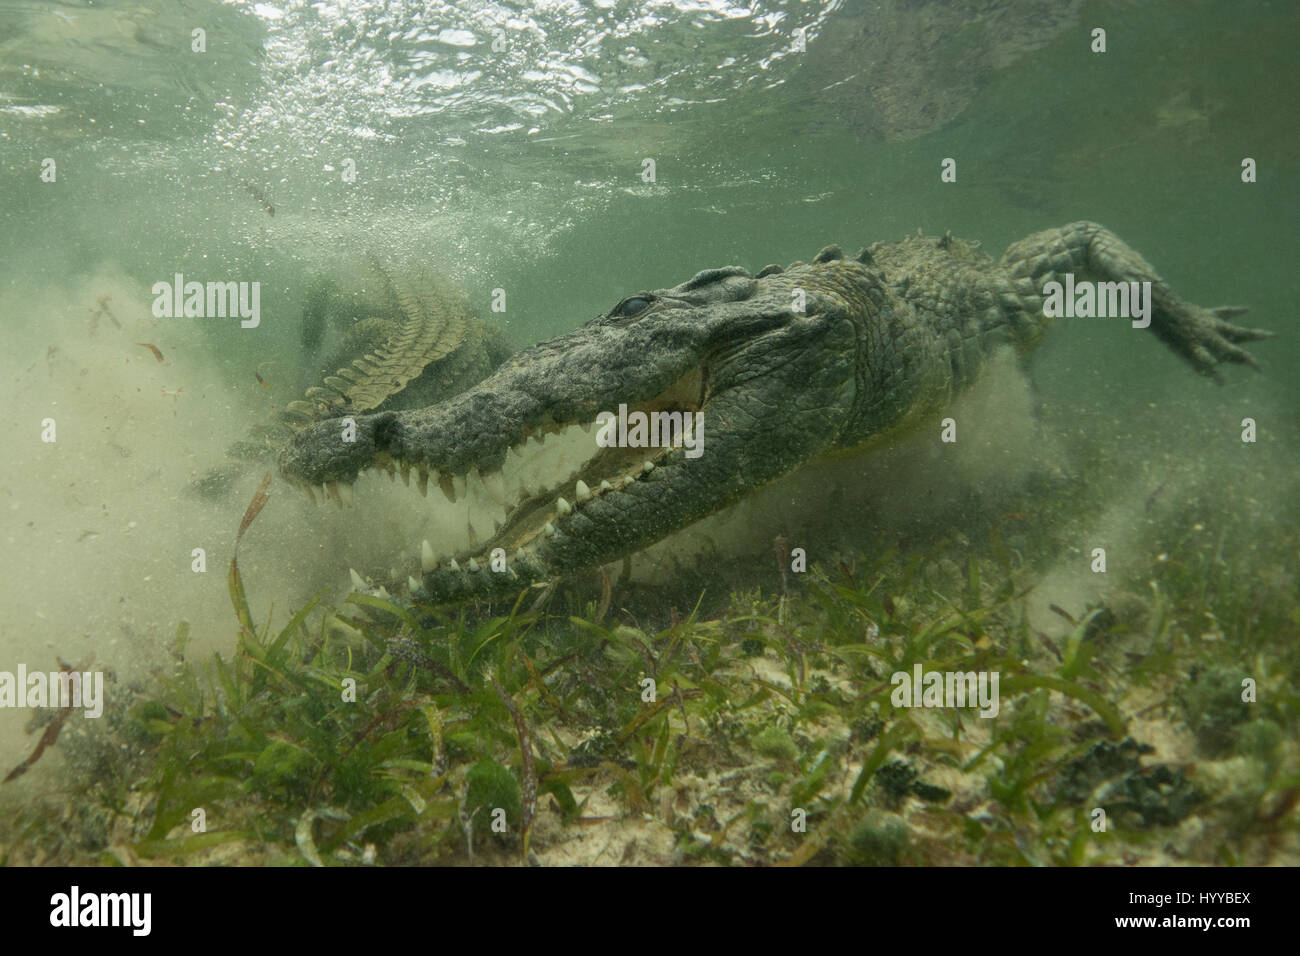 XCALAK, Mexiko: Atemberaubende Unterwasseraufnahmen zeigen einen britischen Mann näher rücken tingingly potenziell tödliche amerikanische Krokodile. Diese unglaublichen Aufnahmen wurden unter Wasser gefangen auf Seegras "Sweet-Spot" - flach genug für Krokodile, zu stehen und einen kurzen Atem während tief genug, um ahnungslose Beute zu fangen. Berkshire-Naturfotograf Chris Knight, trat diese Krokodile unter Wasser und wartet auf den ersten Bissen. Stockfoto